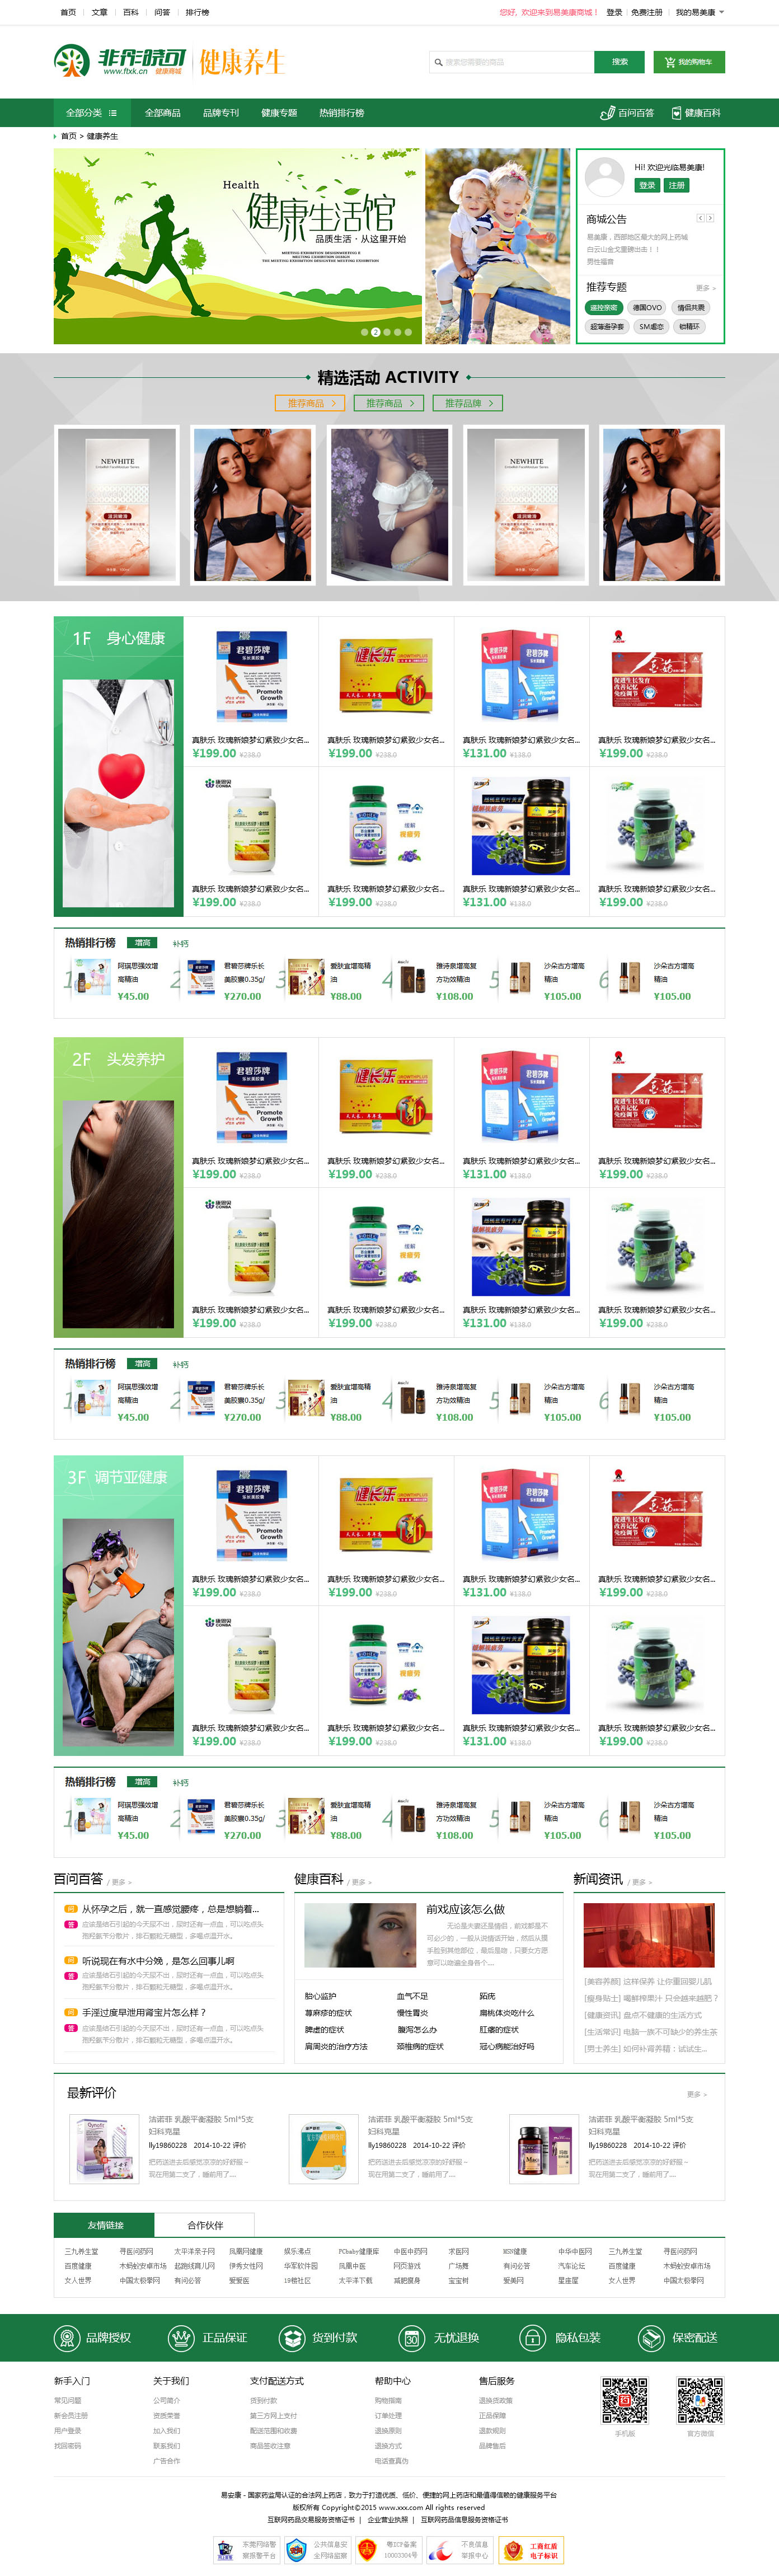 健康养生产品商城网站设计PSD源码